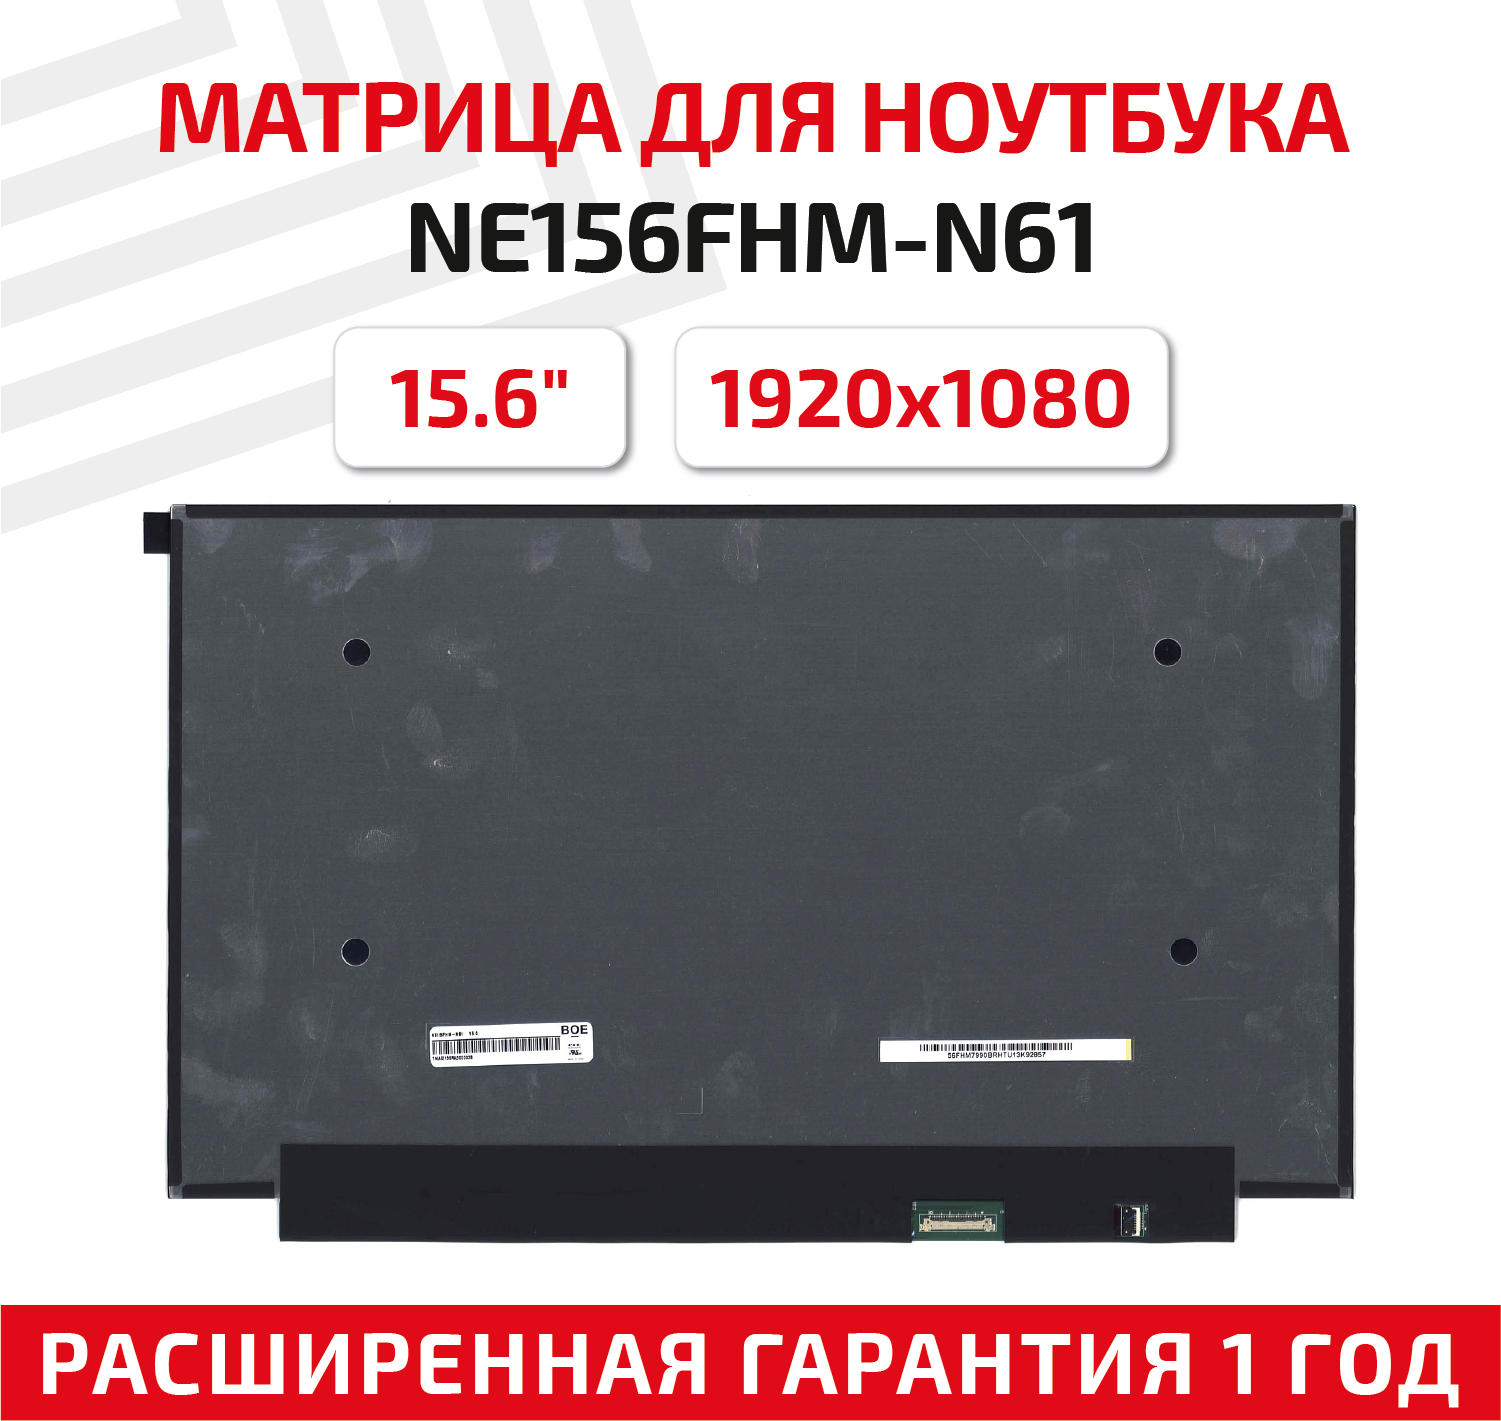 Матрица (экран) для ноутбука NE156FHM-N61, 15.6", 1920x1080, Slim (тонкая), 30-pin, светодиодная (LED), матовая